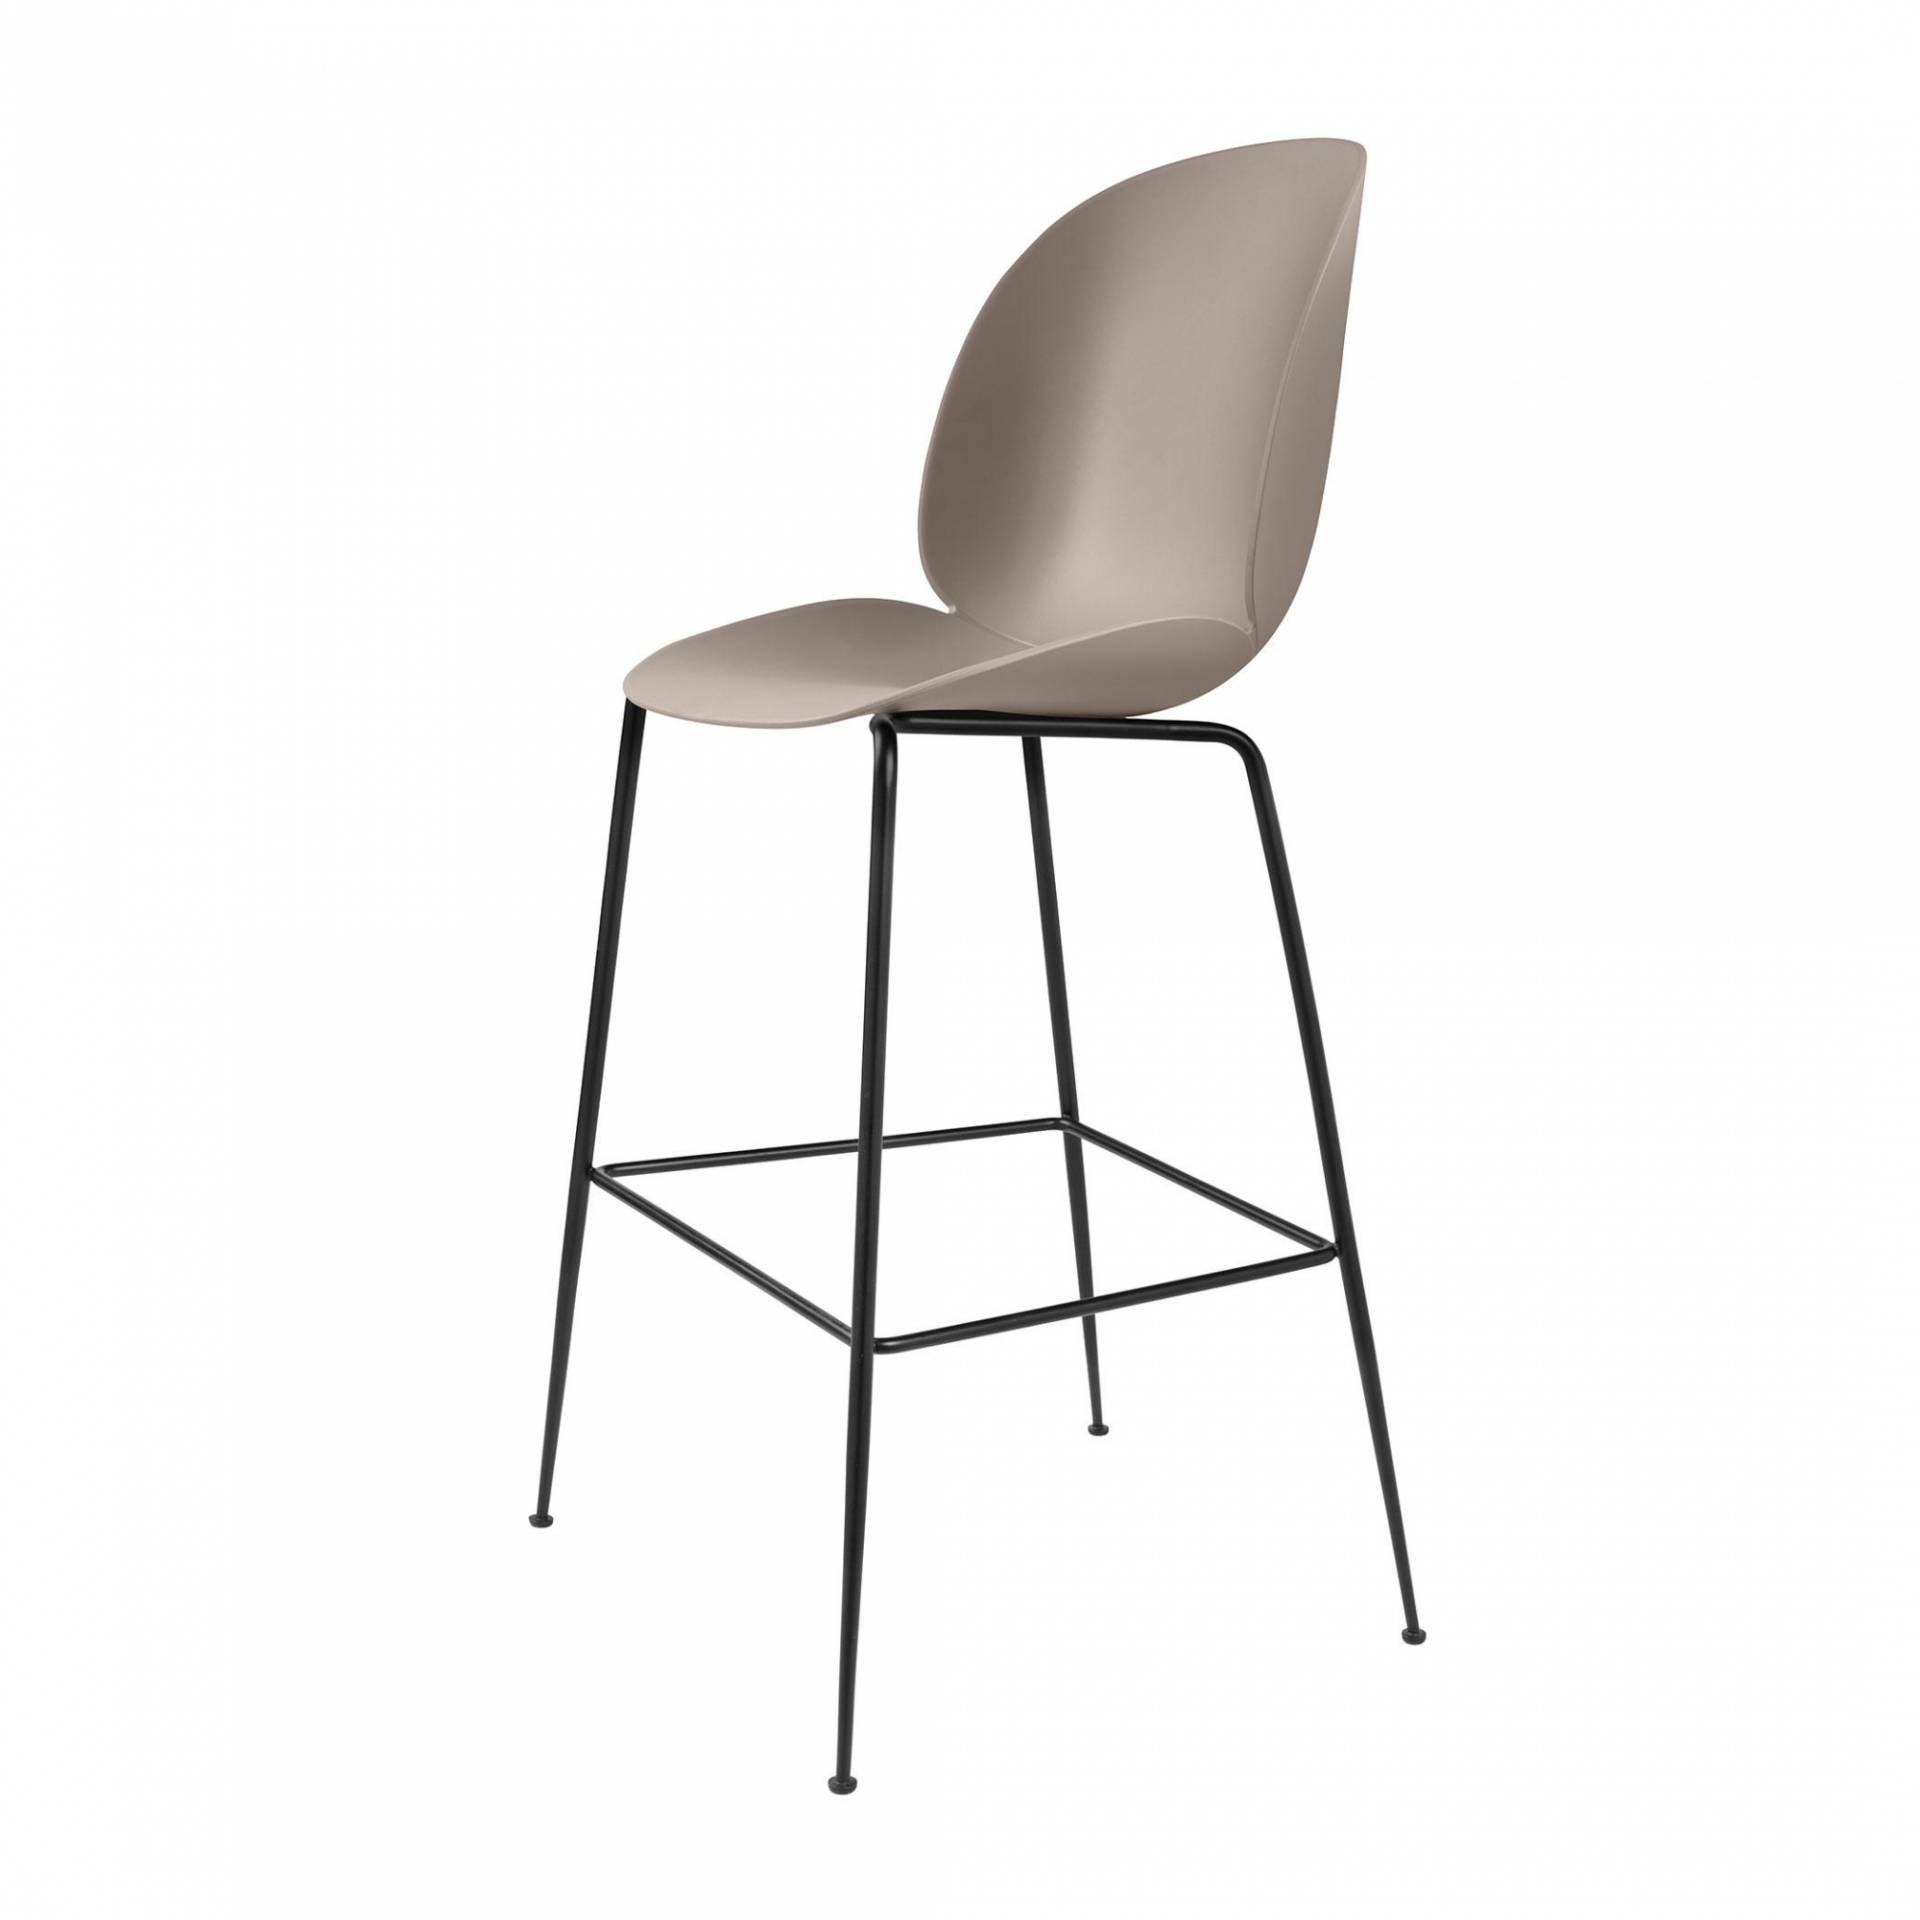 Gubi - Beetle Bar Chair Barhocker Schwarz 118cm - neues beige/Sitz Polypropylen-Kunststoff/BxHxT 56x118x58cm/Gestell schwarz/Kunststoffgleiter von Gubi